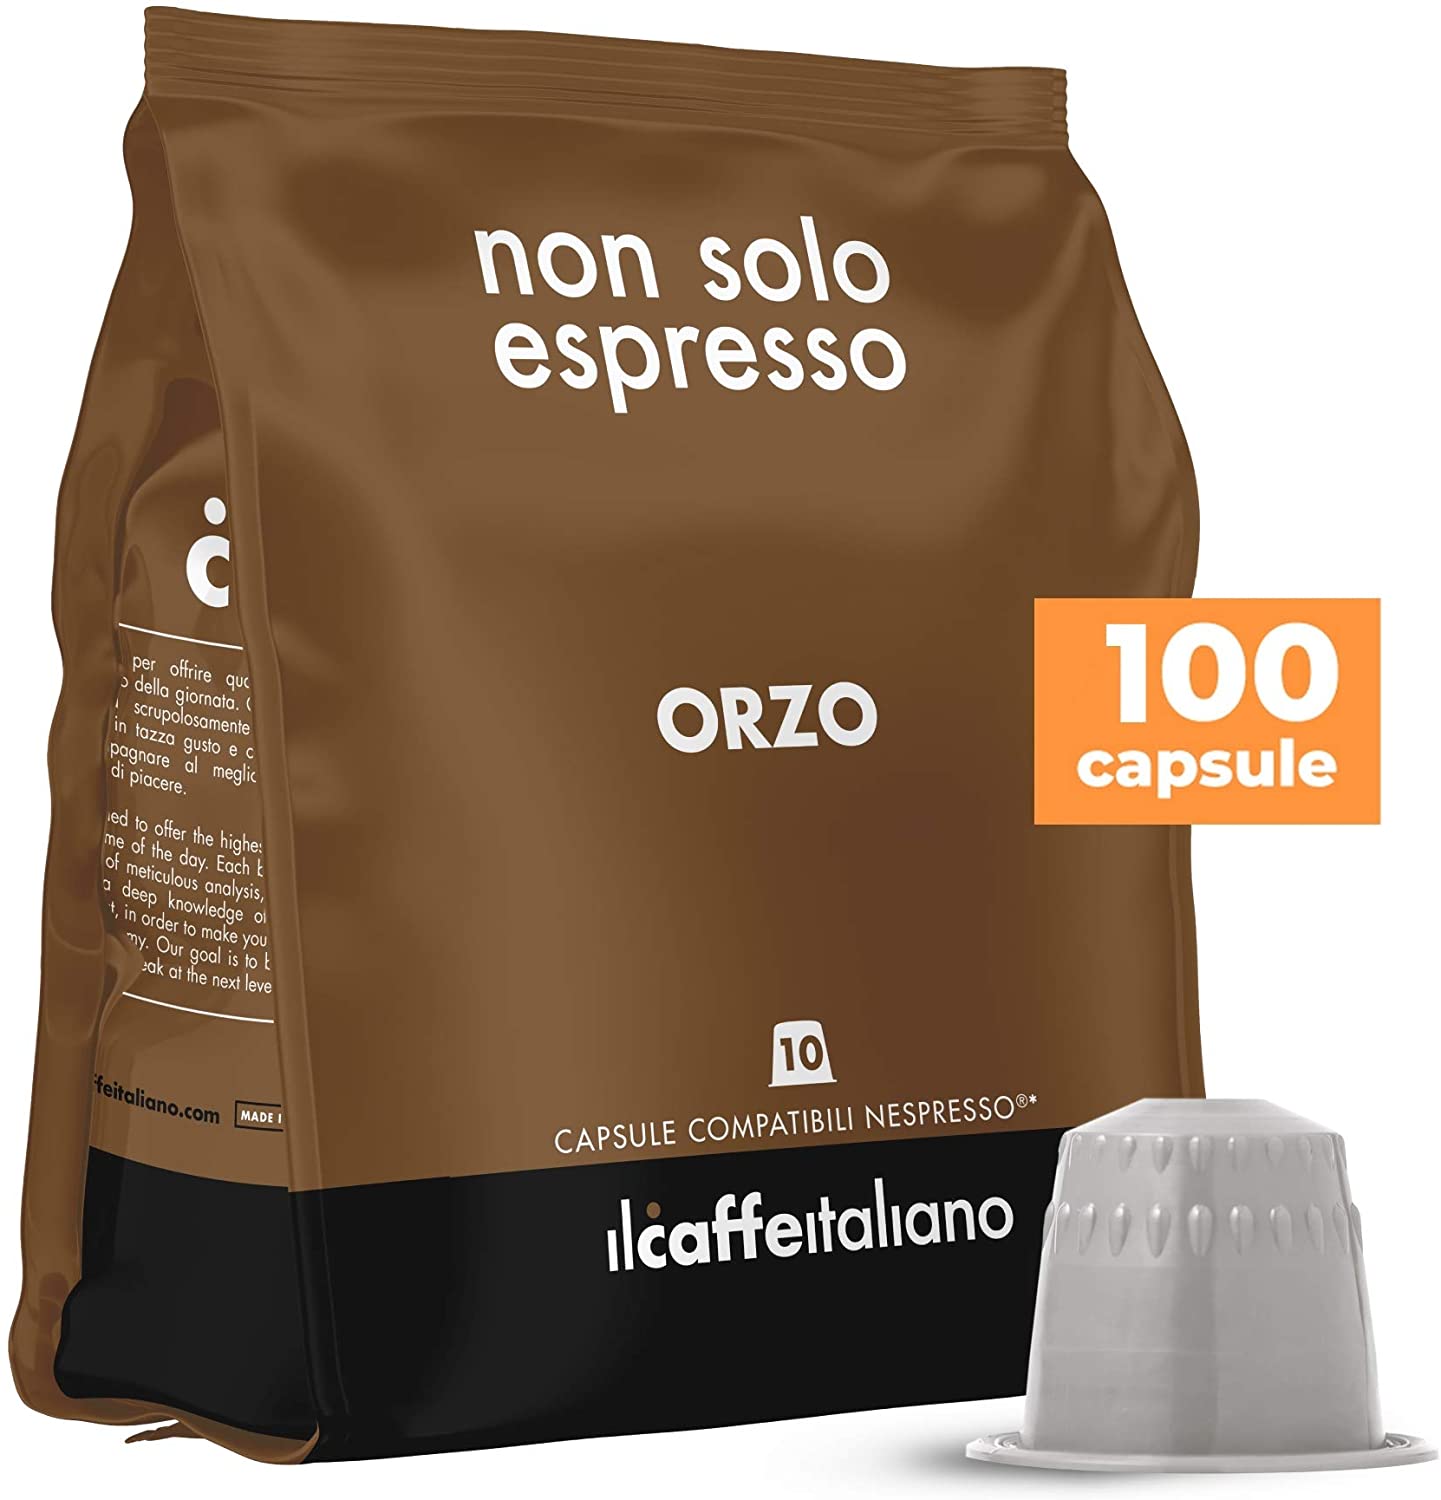 Il Caffè Italiano - 100 Capsule Orzo - Compatibili con Macchine da caffè Nespresso - Frhome